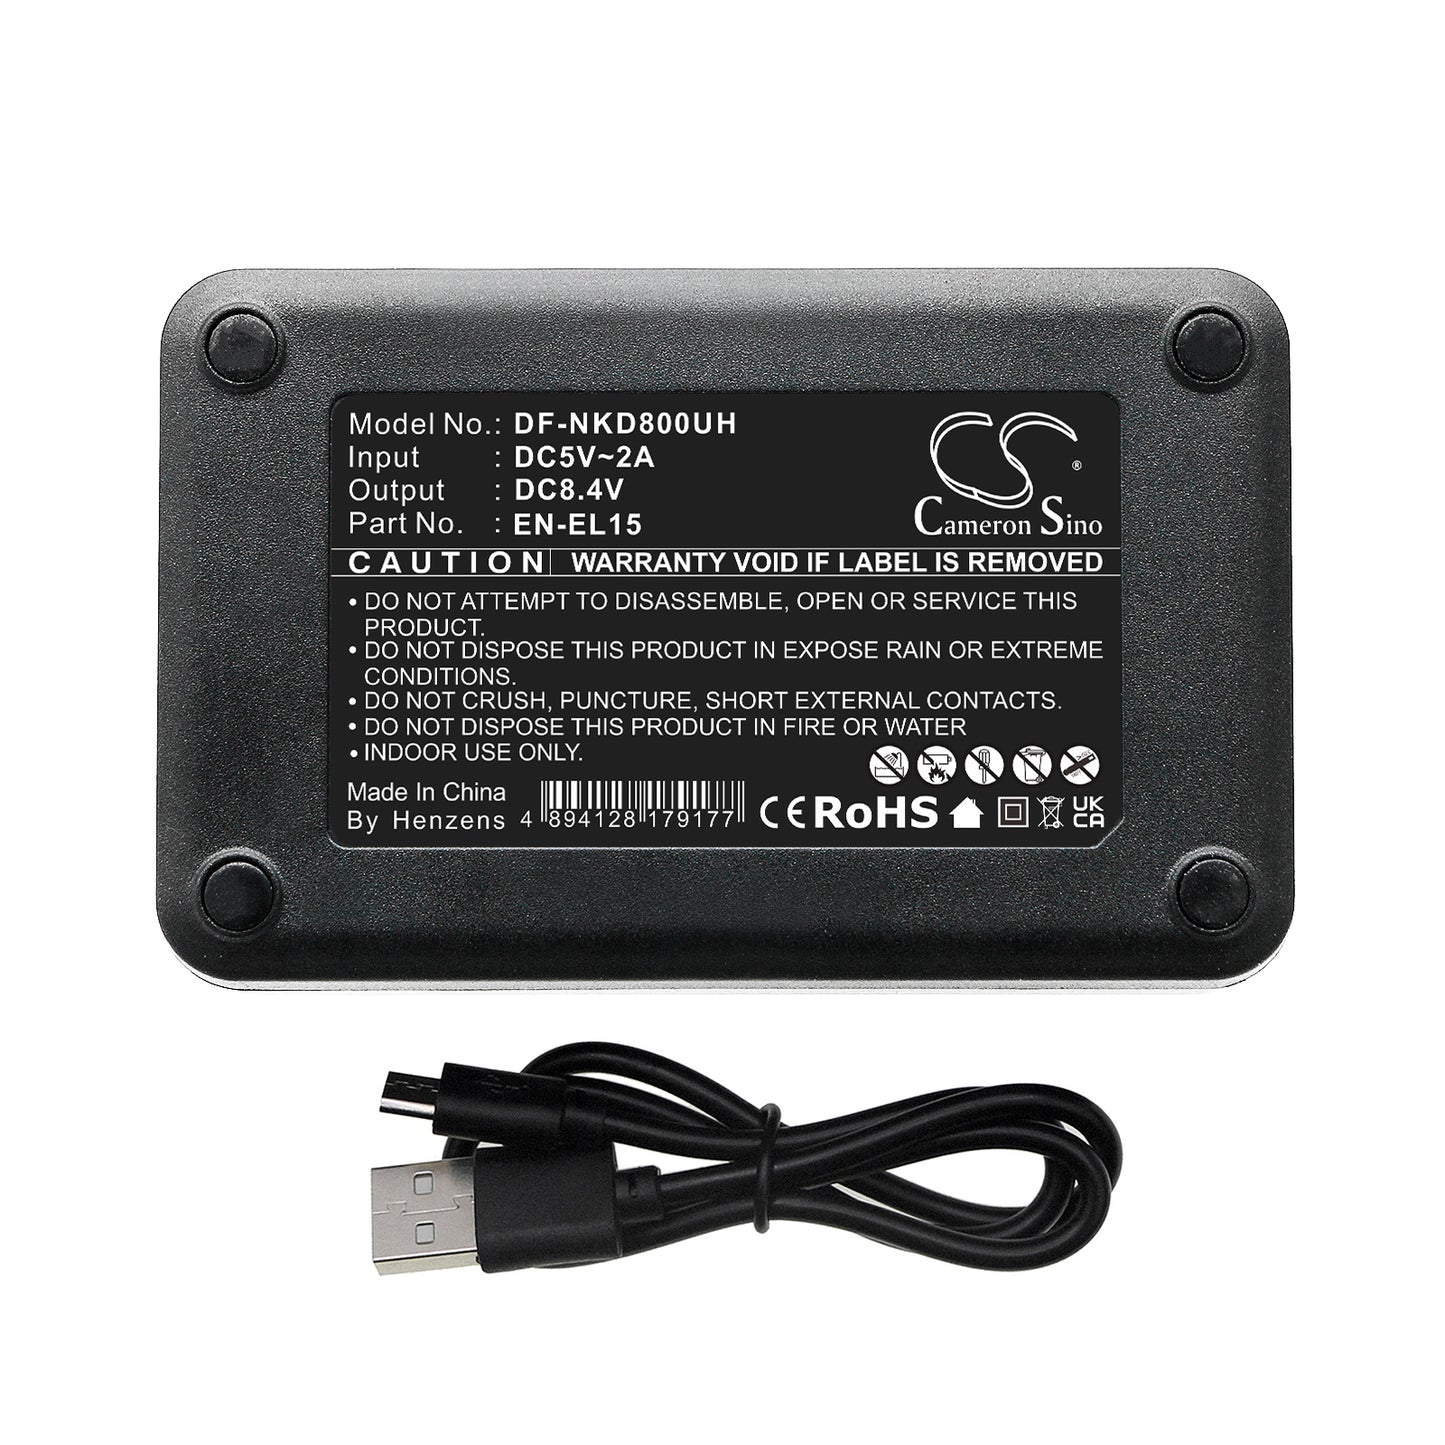 LCD USB Dual charger for EN-EL15, EN-EL15A, EN-EL15B, EL-EL15C-SMAVtronics